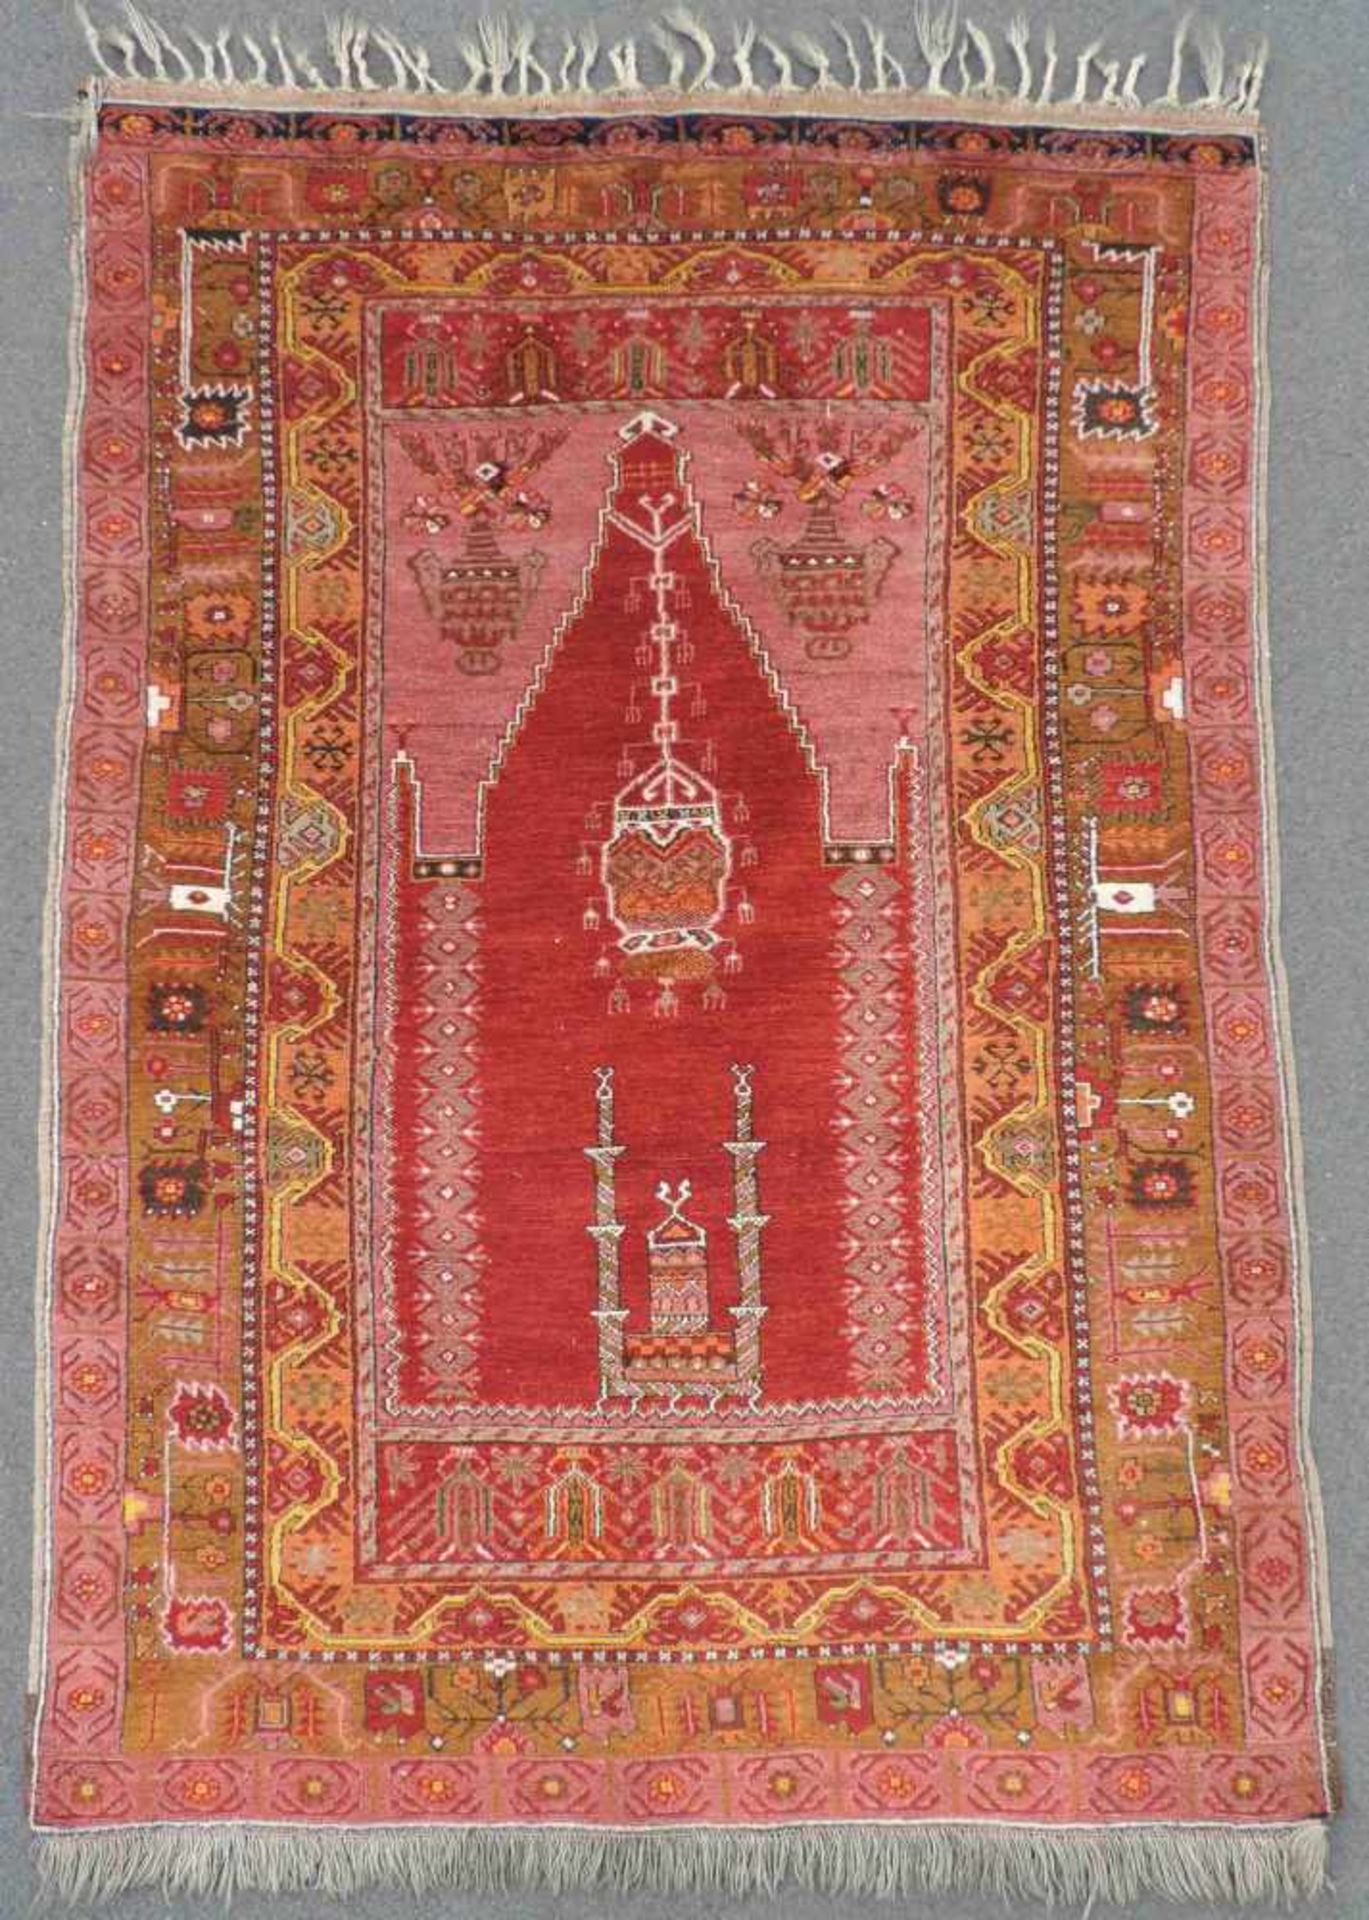 Milas Gebetsteppich. West - Anatolien. Türkei. Antik, um 1890.198 cm x 123 cm. Handgeknüpft. Wolle